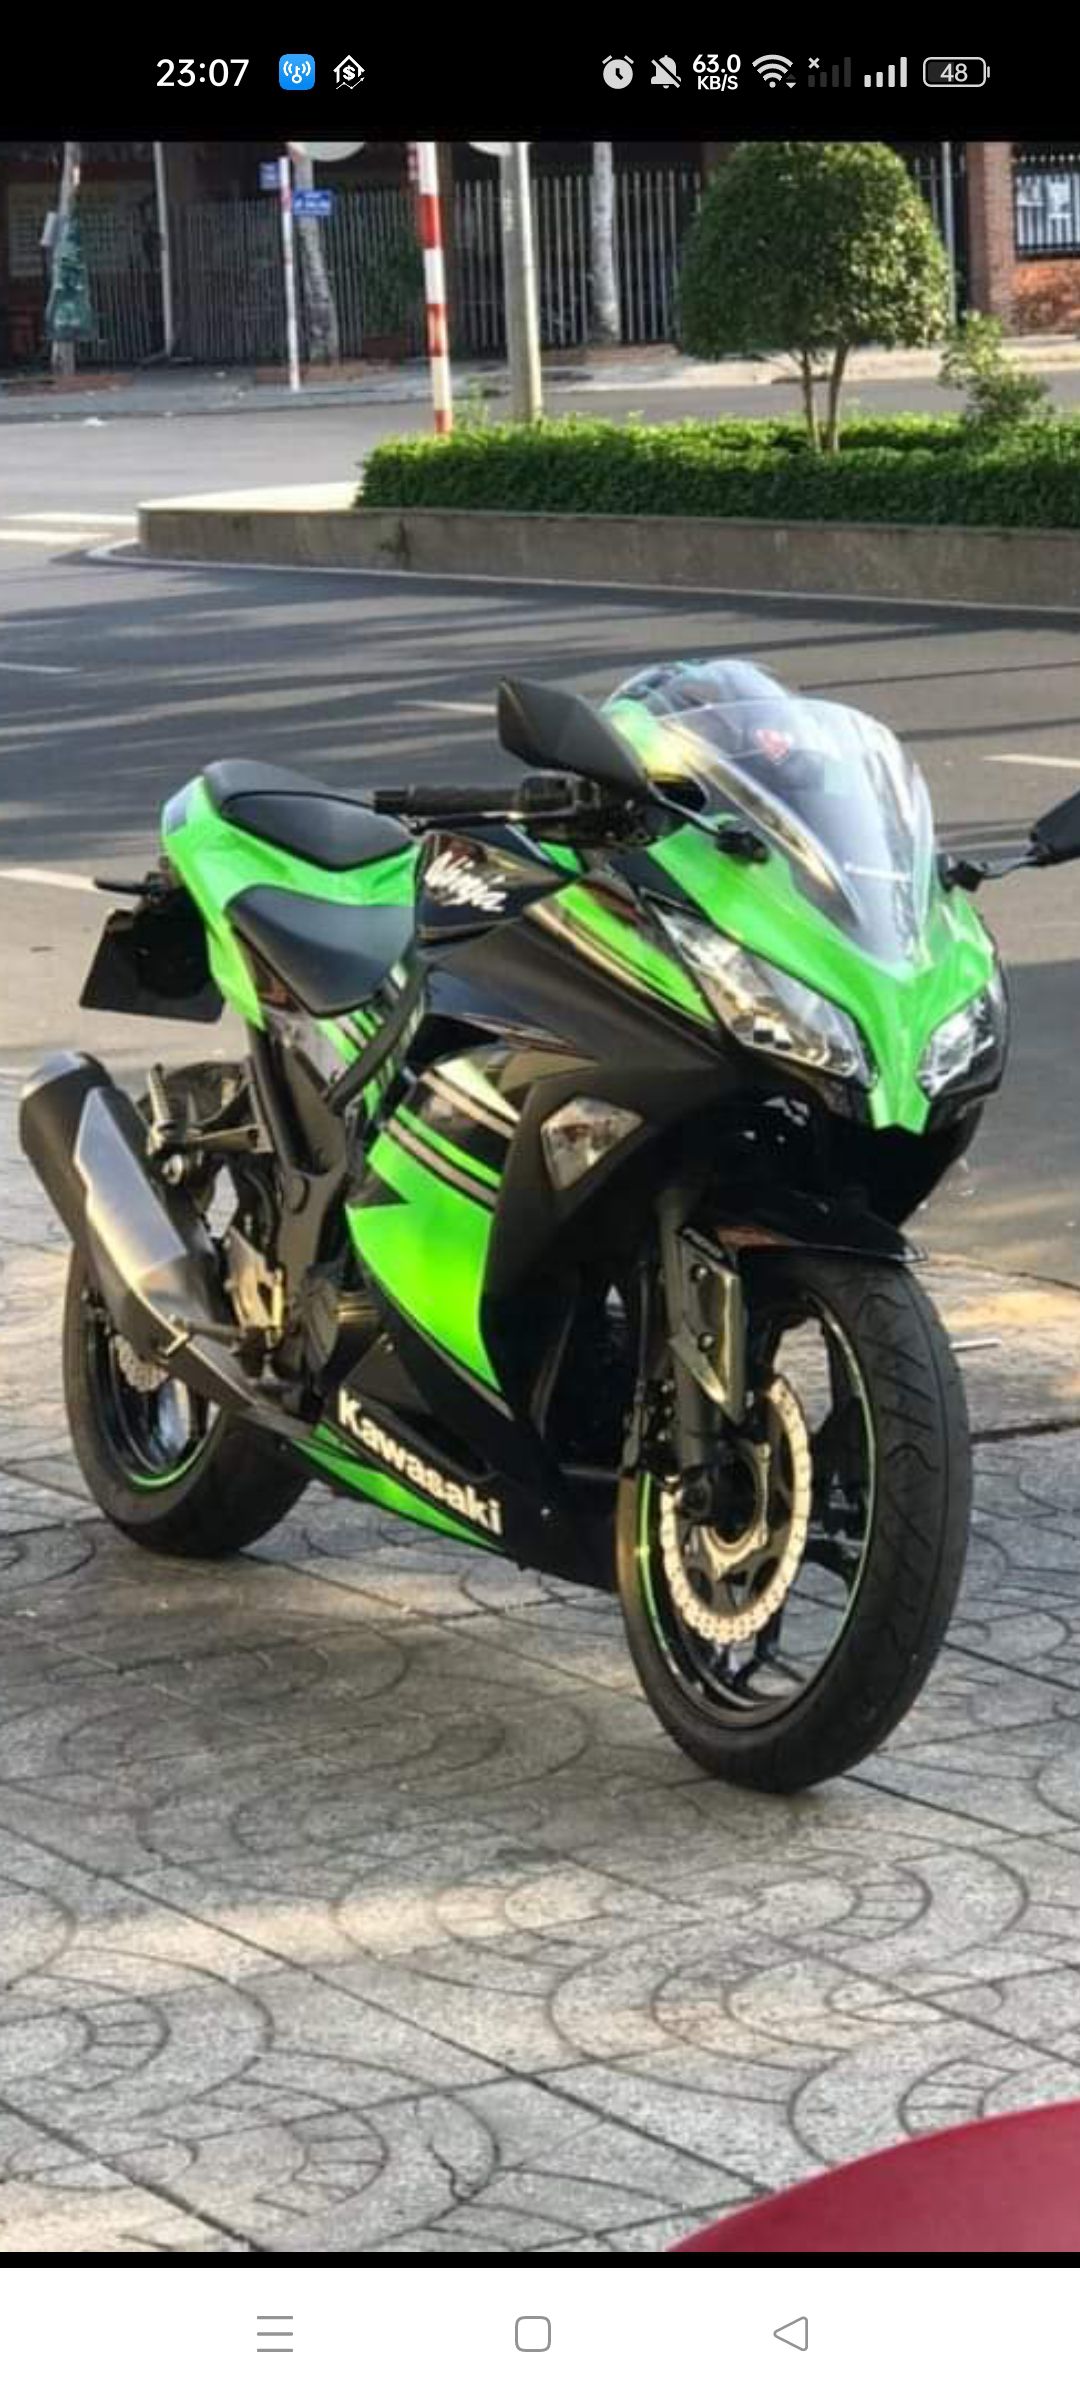 Cần bán Kawasaki Ninja 300 2017 màu đen đậm xanh lá